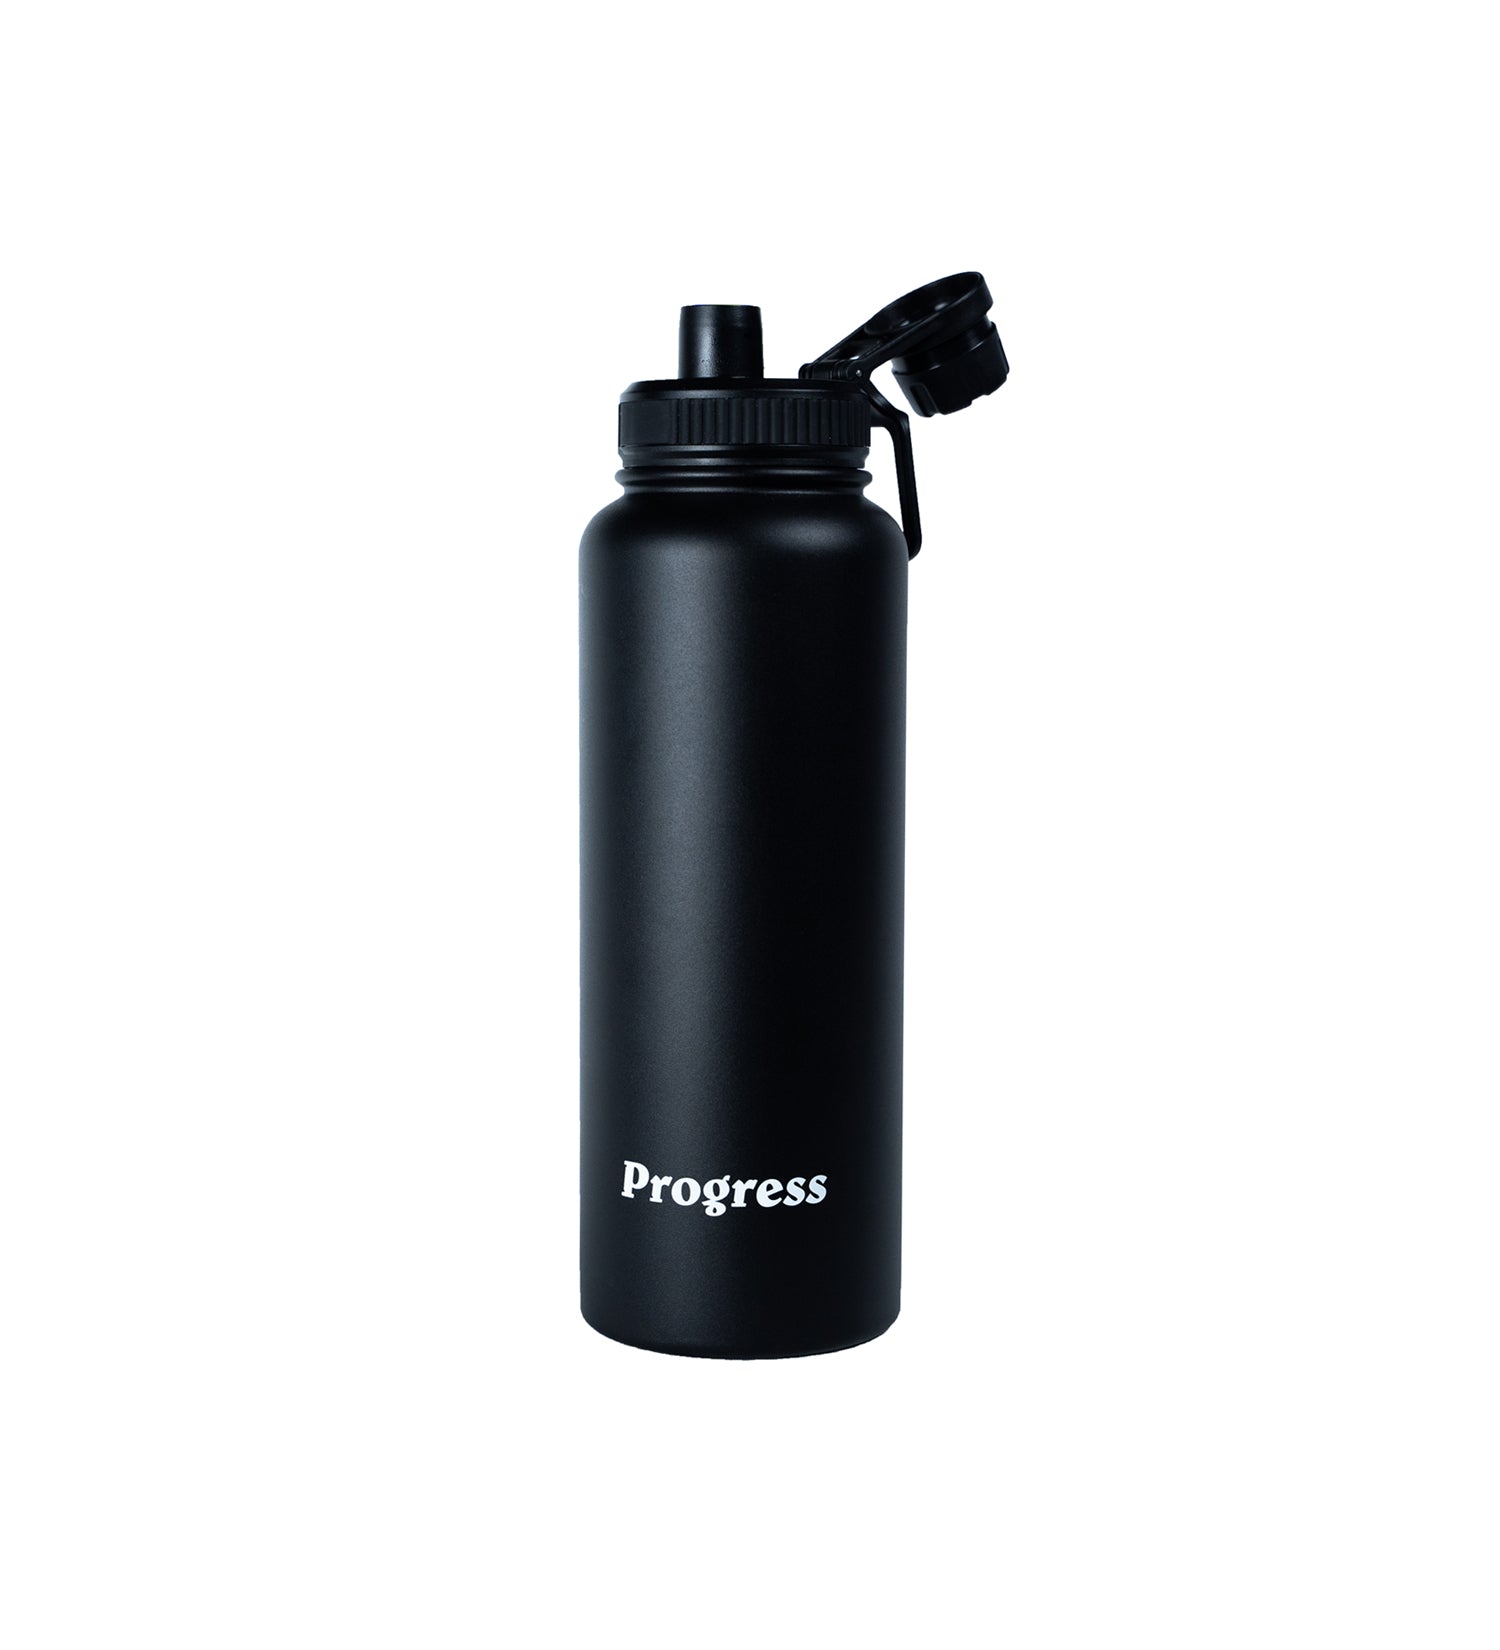 Progress 1.2L Water Bottle - Black